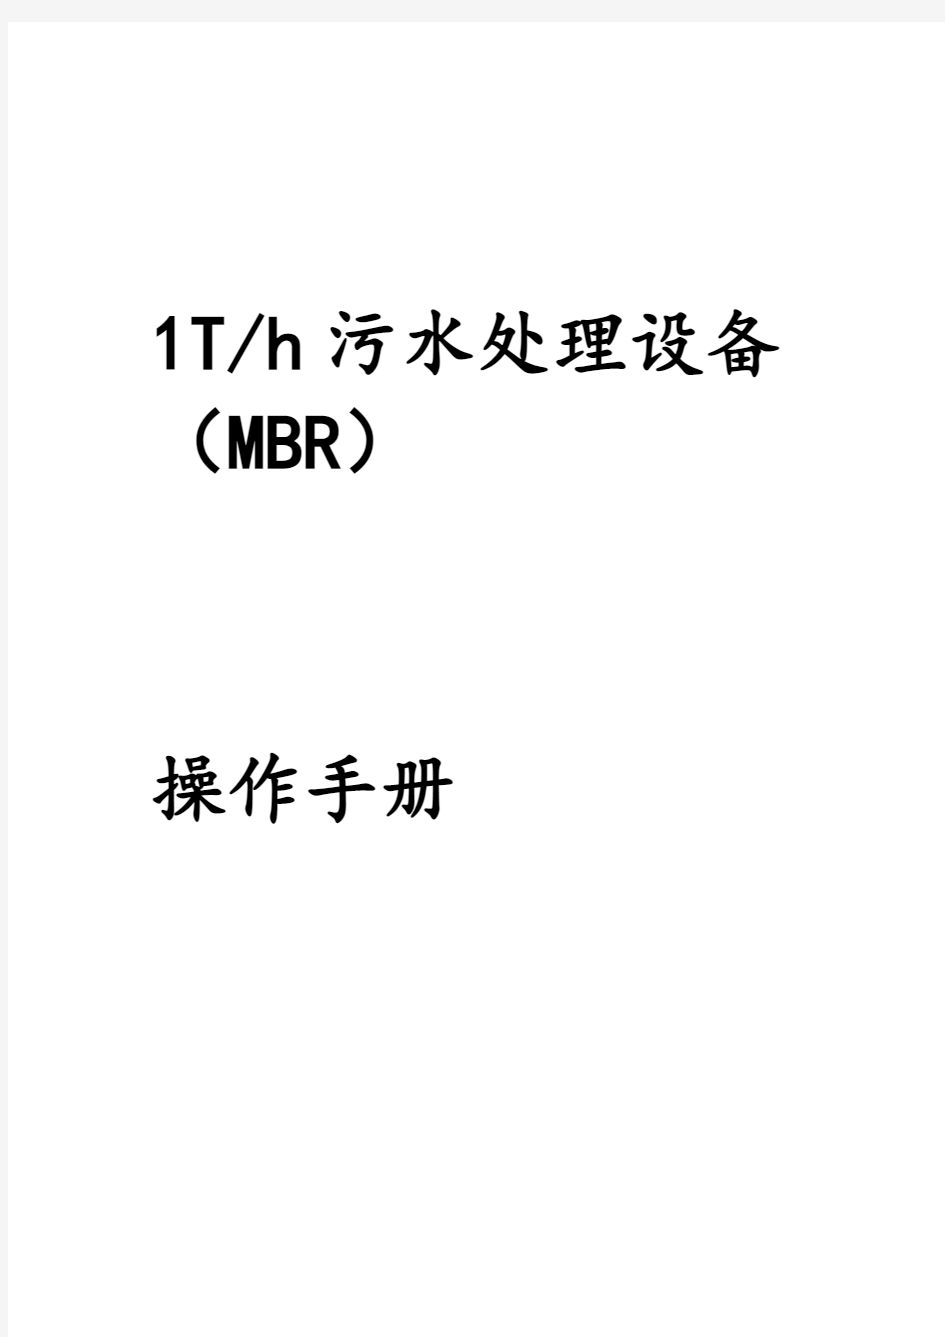 MBR一体化设备操作手册范本